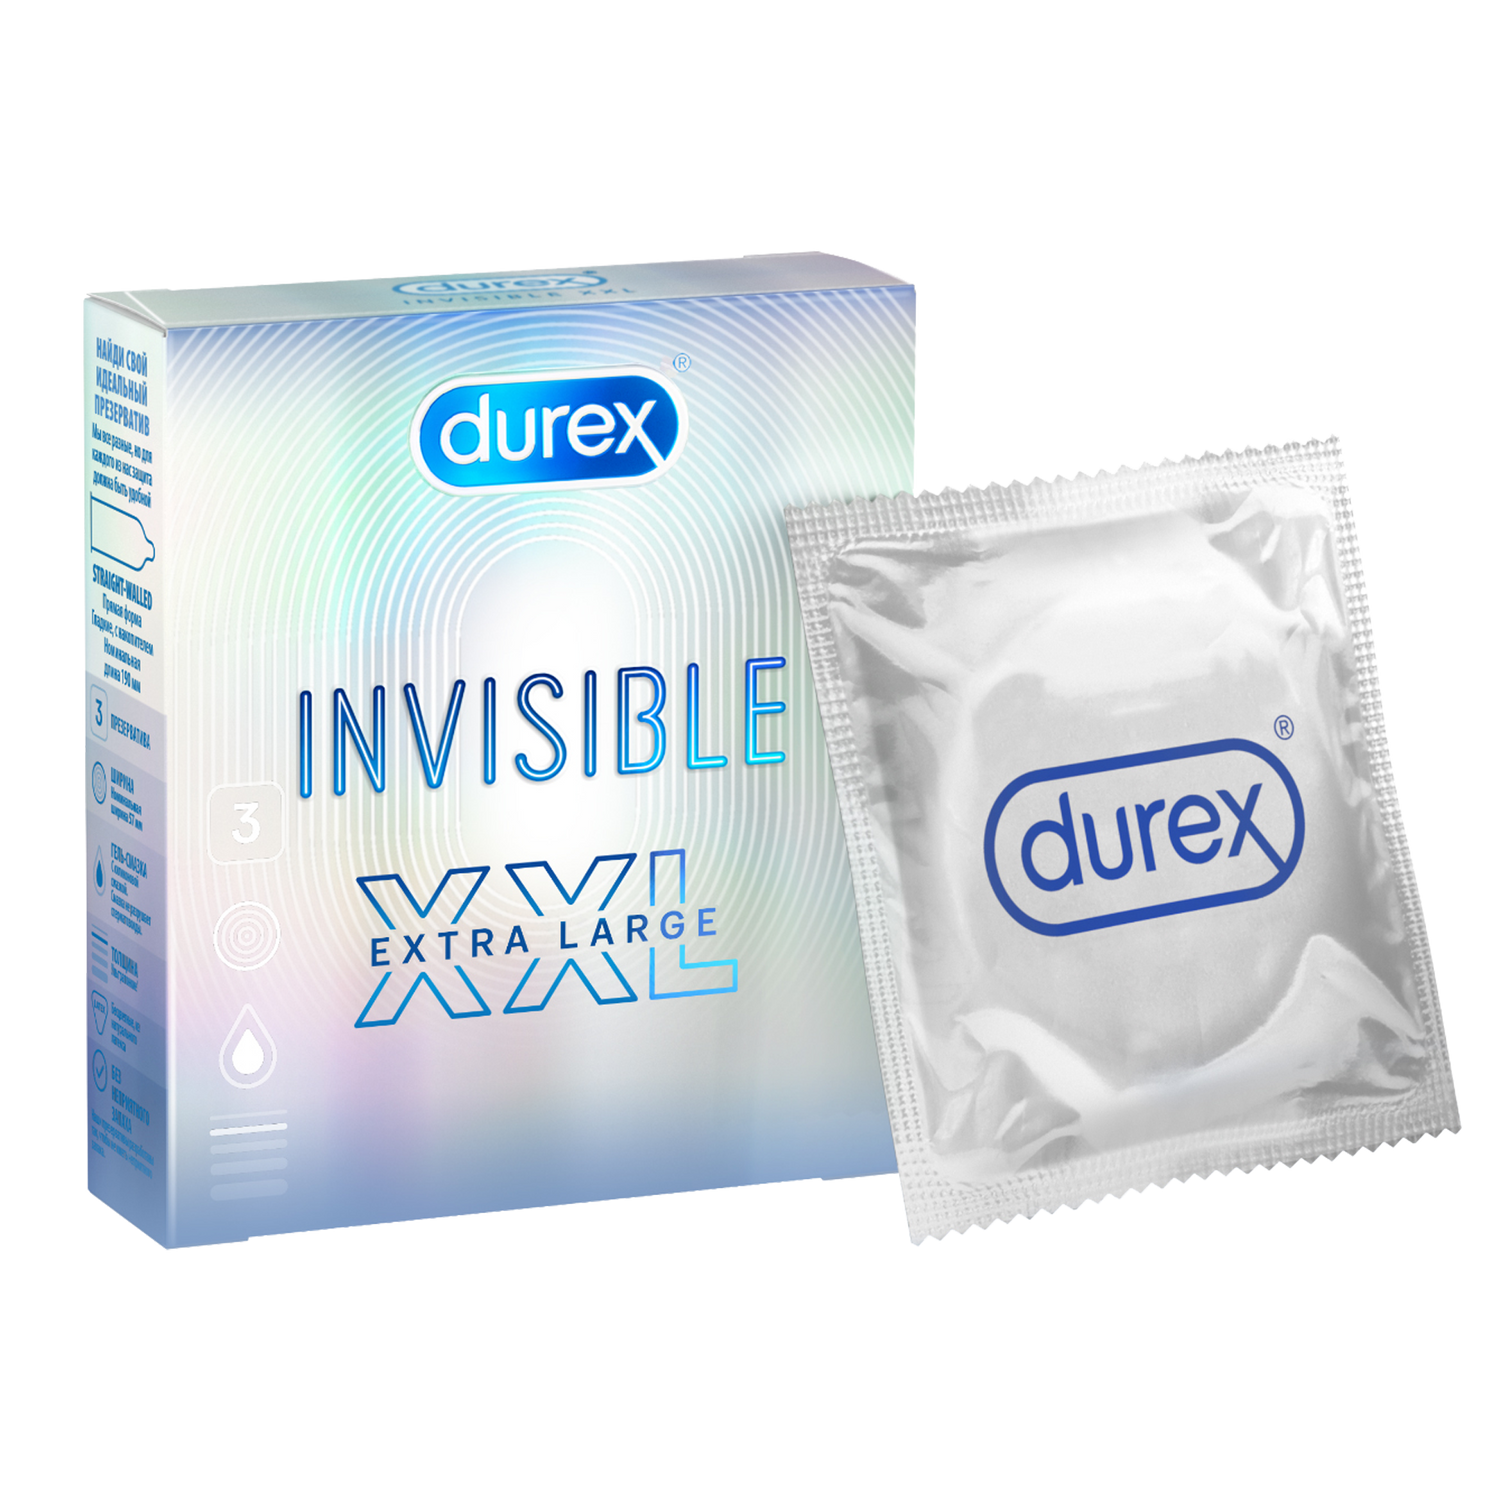 Durex Invisible XXL, презервативы, 3 шт. vizit презервативы увеличенного размера большие 12